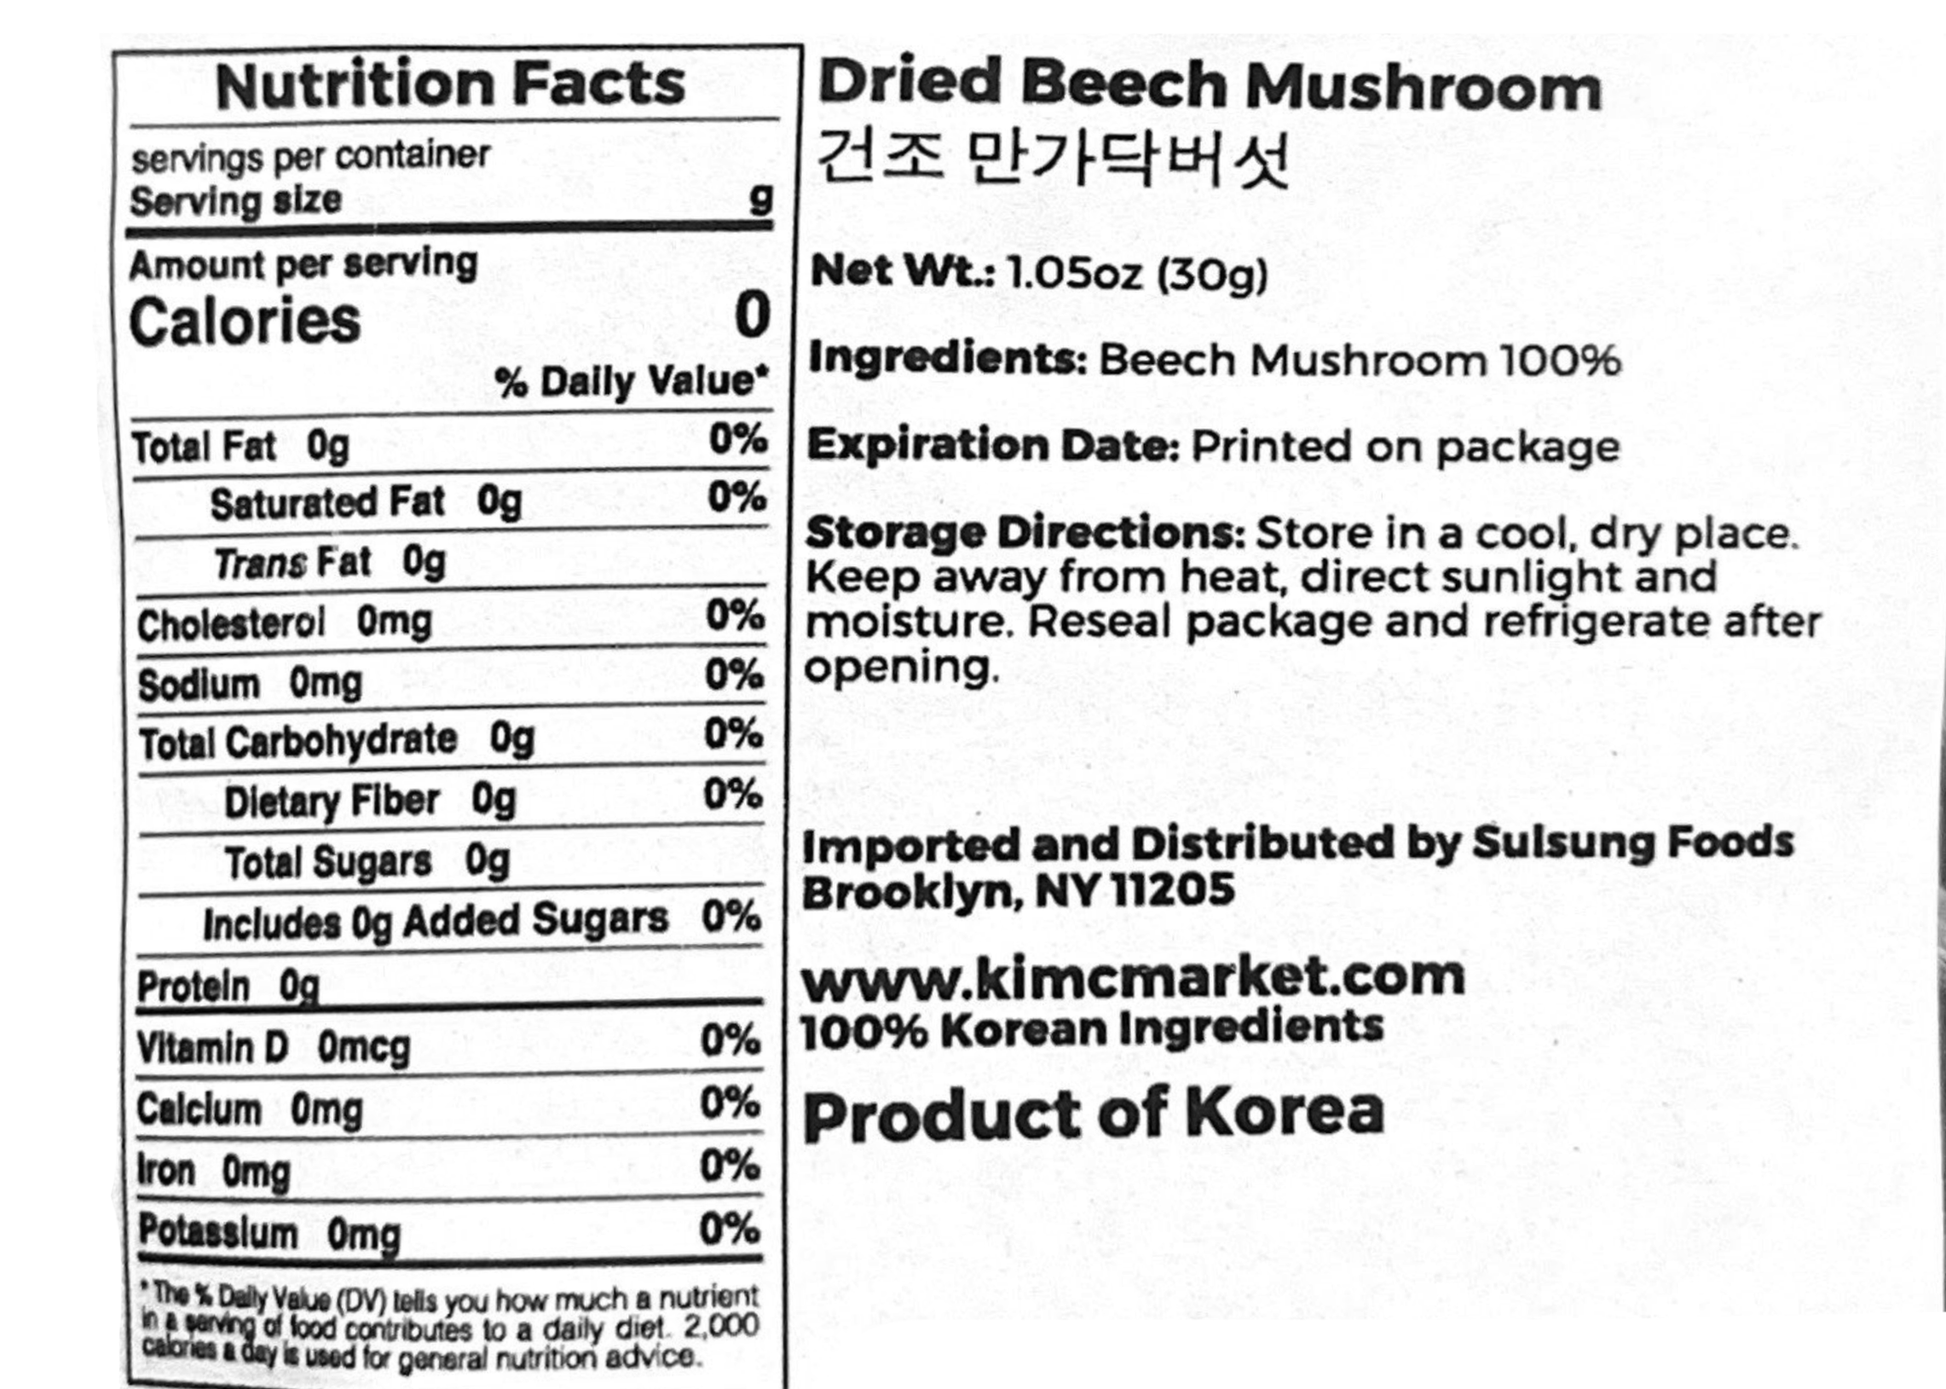 Dried Beech Mushroom - Kim'C Market